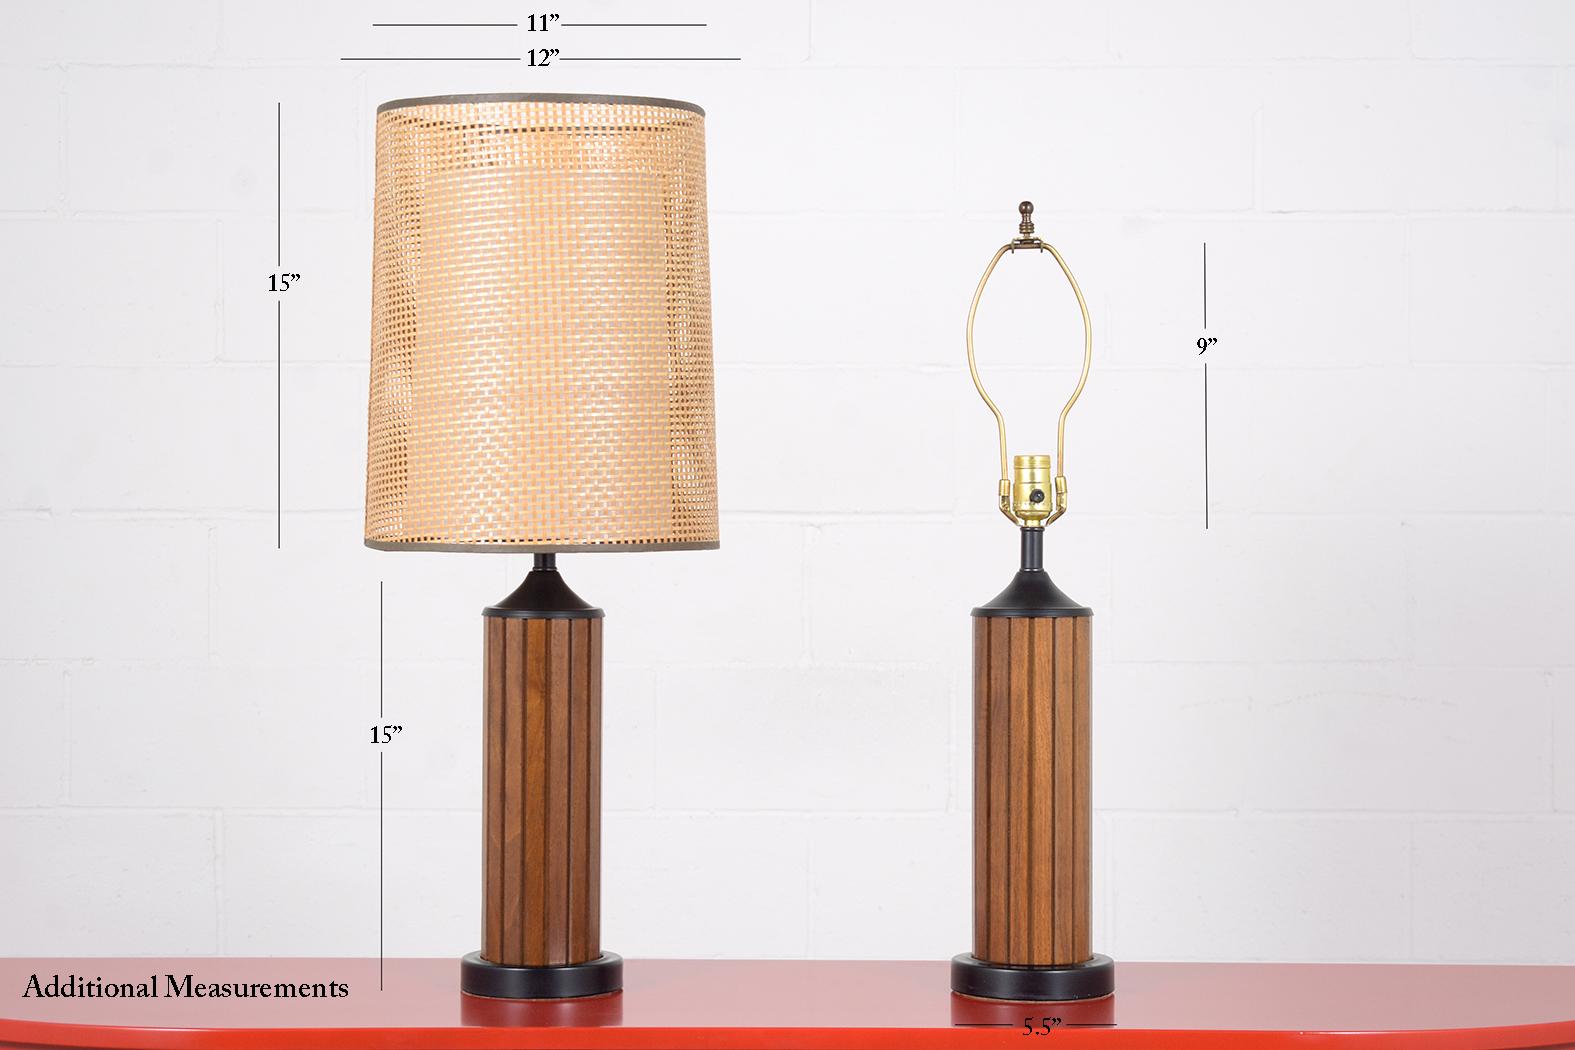 Une paire extraordinaire de lampes de table du milieu du siècle exécutées en bois et sont en très bon état nouvellement refinies et câblées par notre équipe d'artisans experts en interne. Cette paire de lampes de table élégantes est dotée